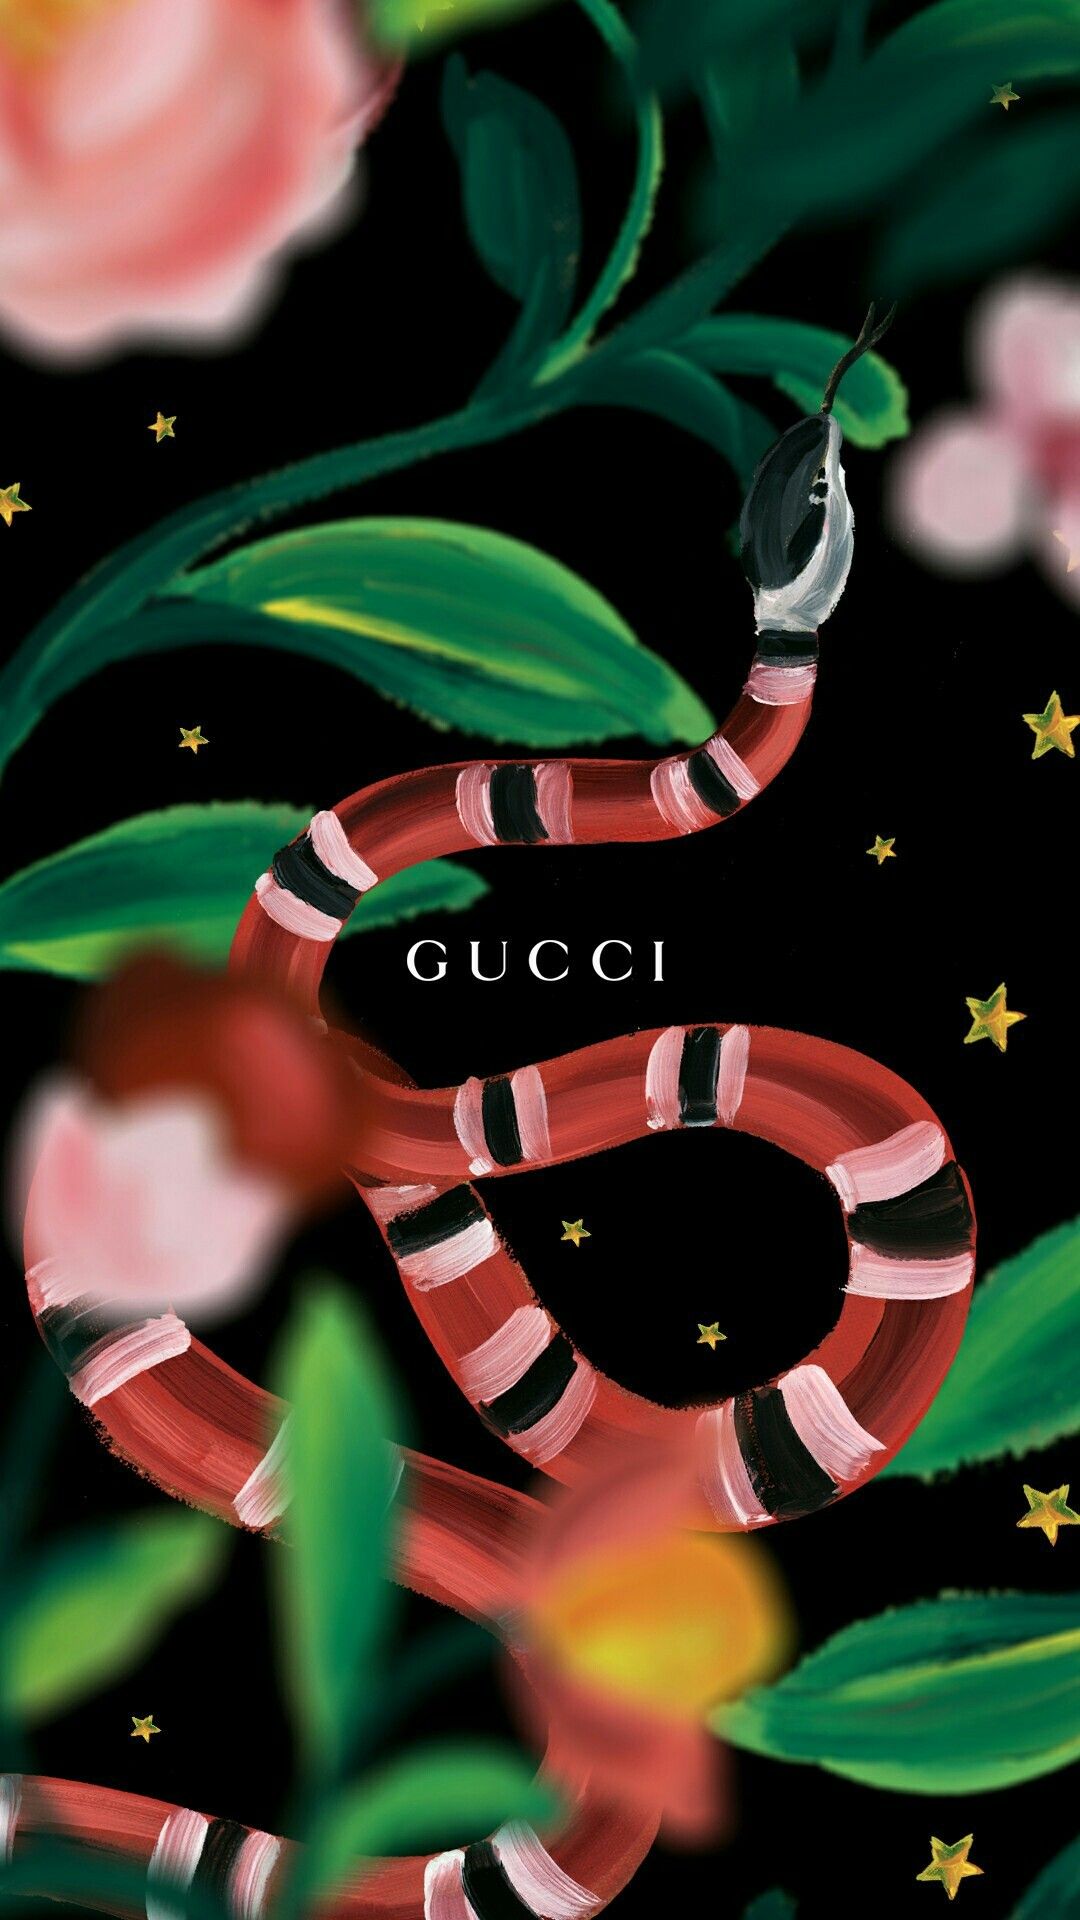 Gucci Supreme Wallpaper - Wallpaper Sun